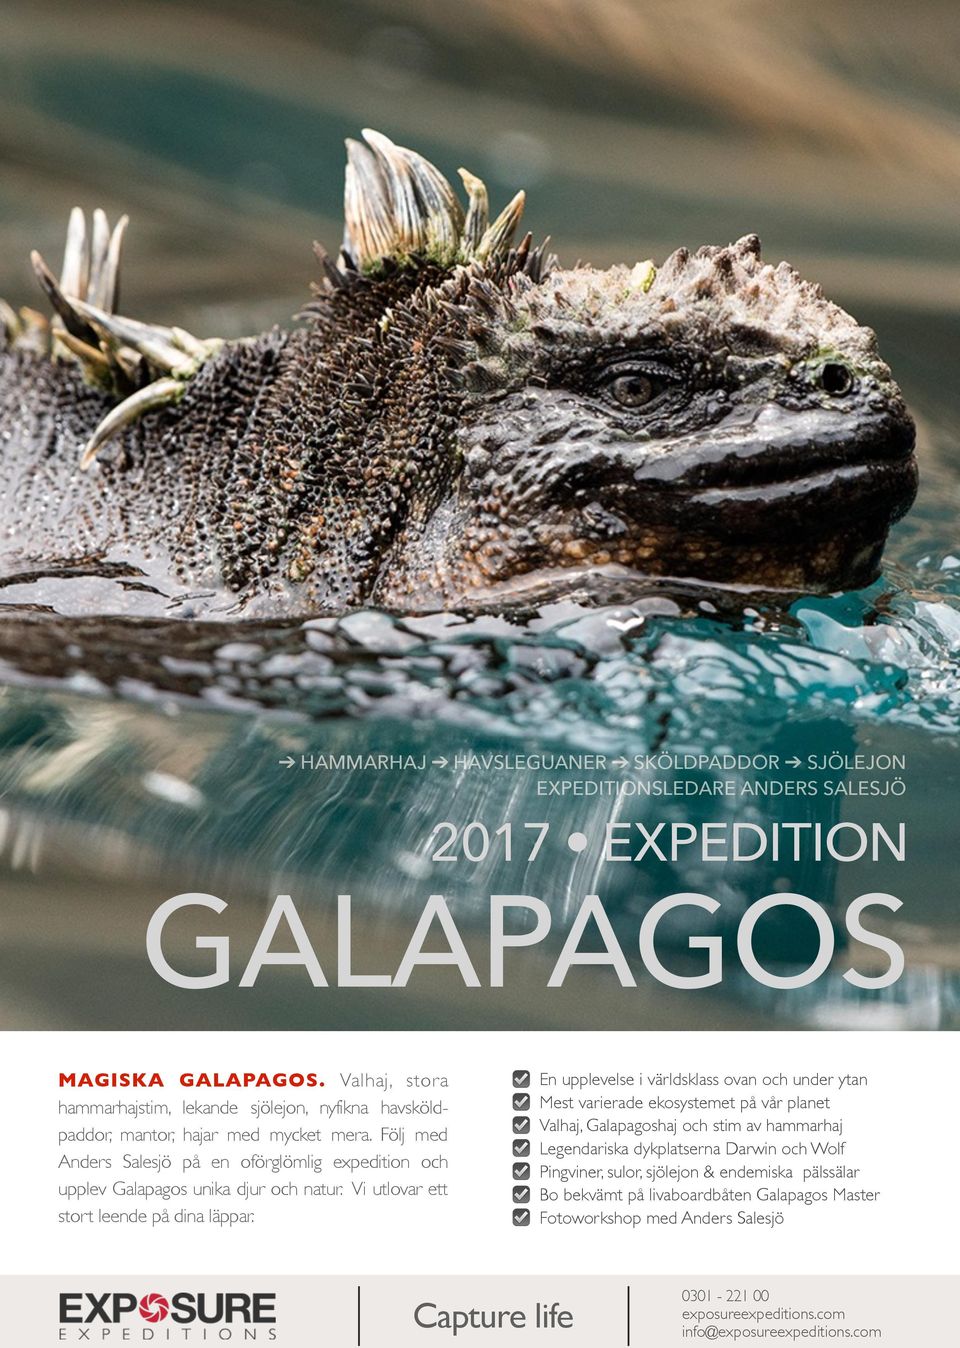 Följ med Anders Salesjö på en oförglömlig expedition och upplev Galapagos unika djur och natur. Vi utlovar ett stort leende på dina läppar.